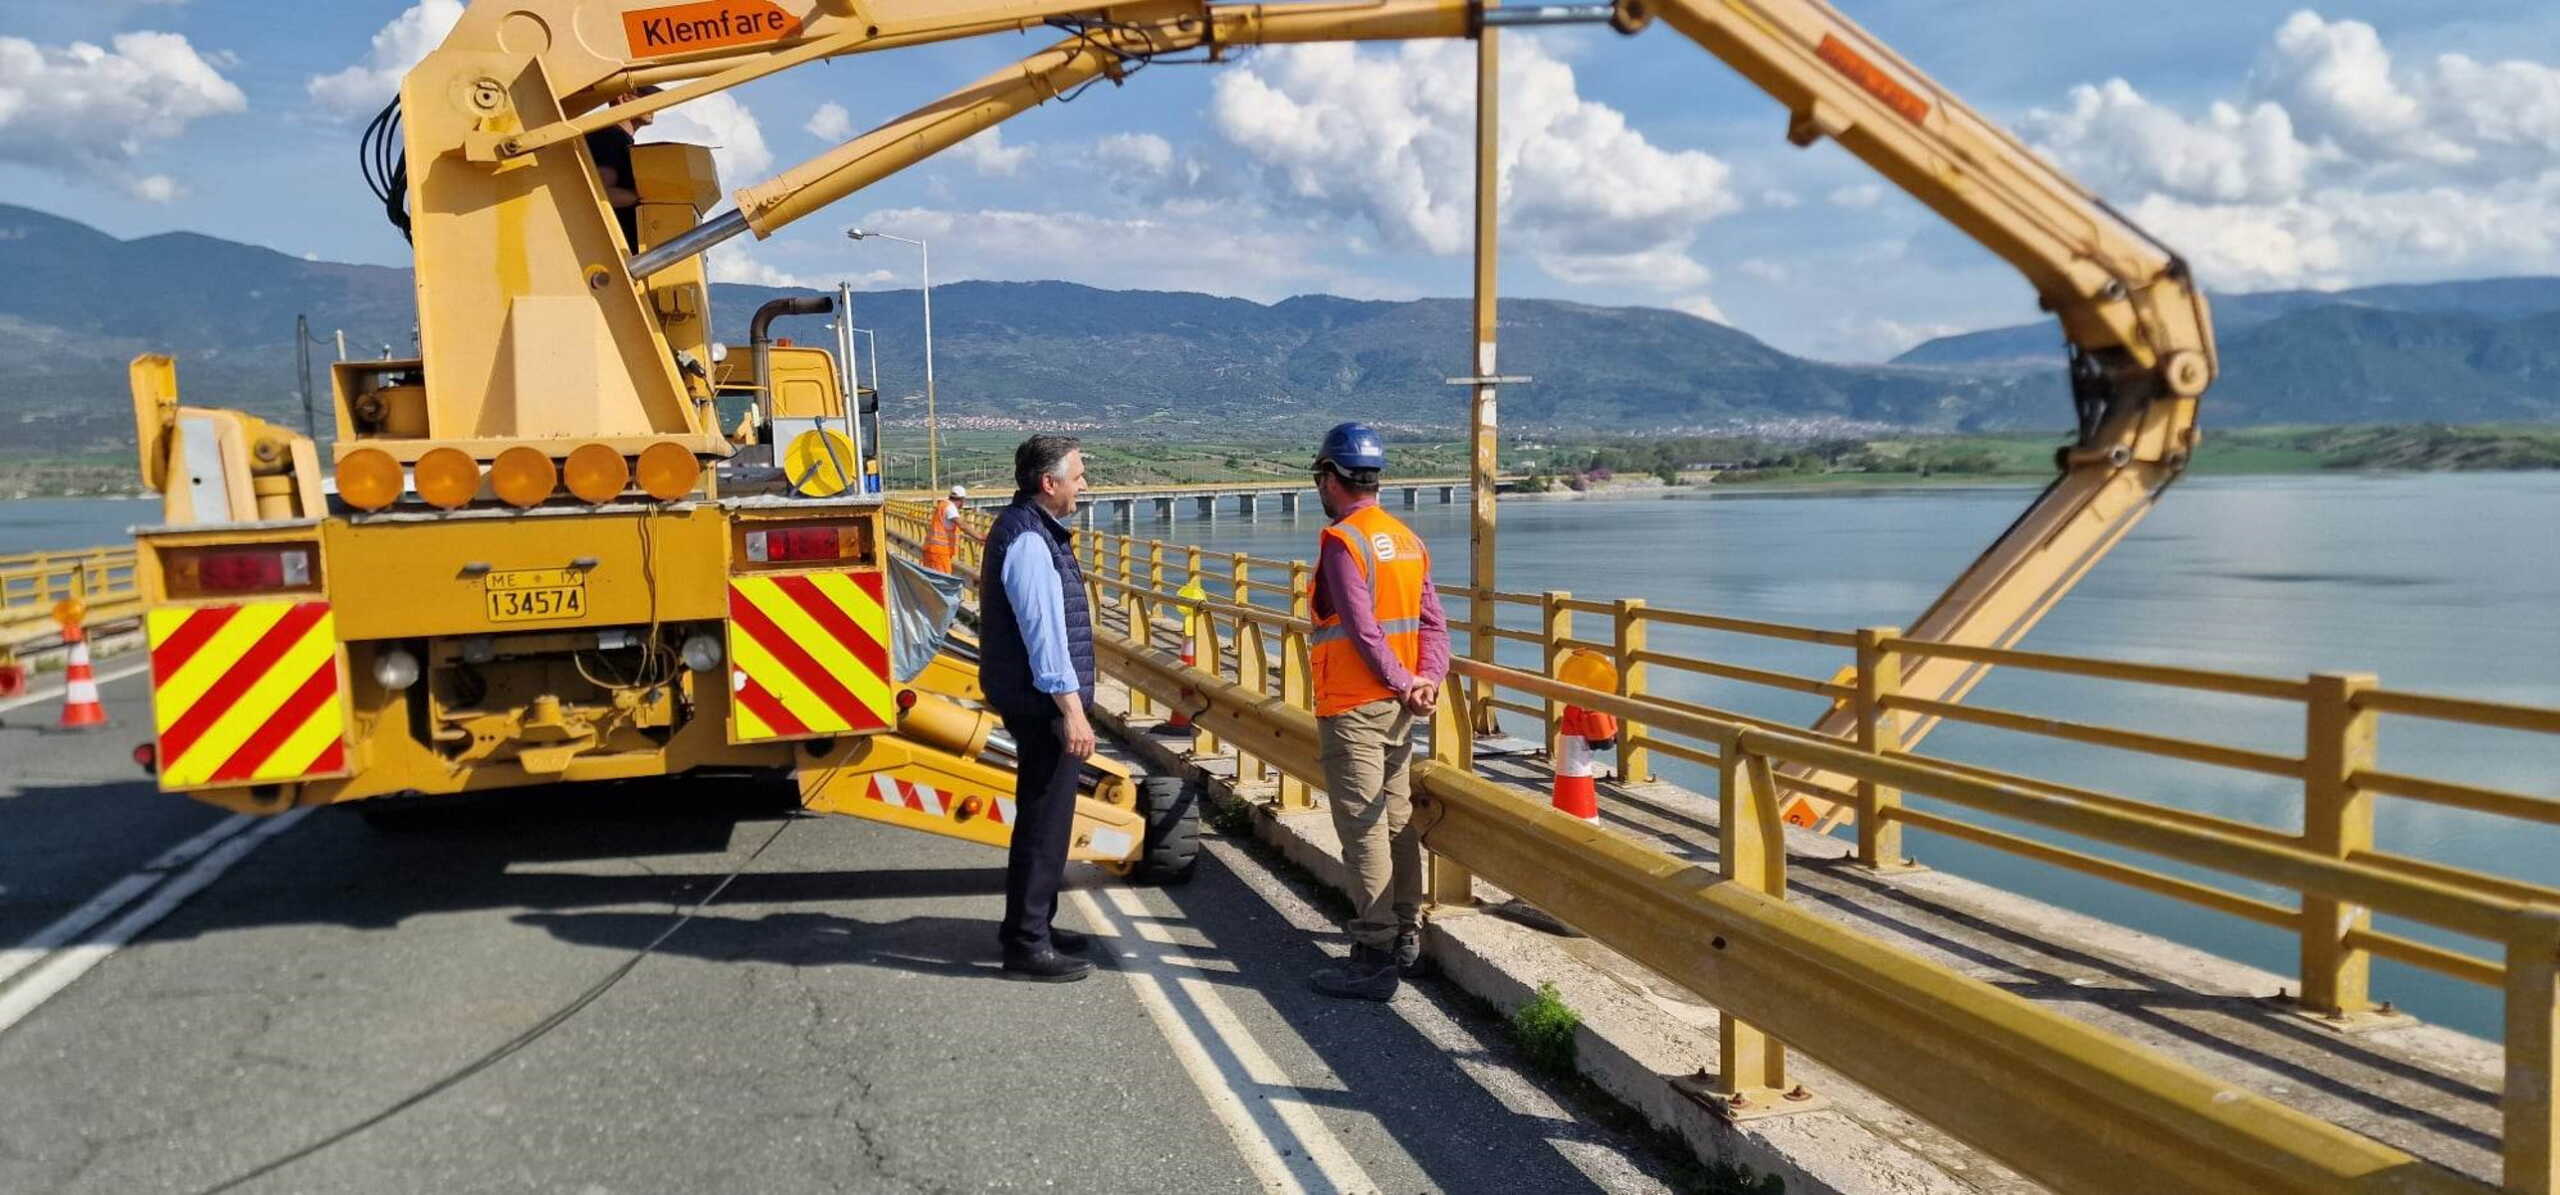 Γέφυρα Σερβίων: Δεν υπάρχει πρόβλημα στατικότητας – Ολοκληρώθηκε ο έλεγχος